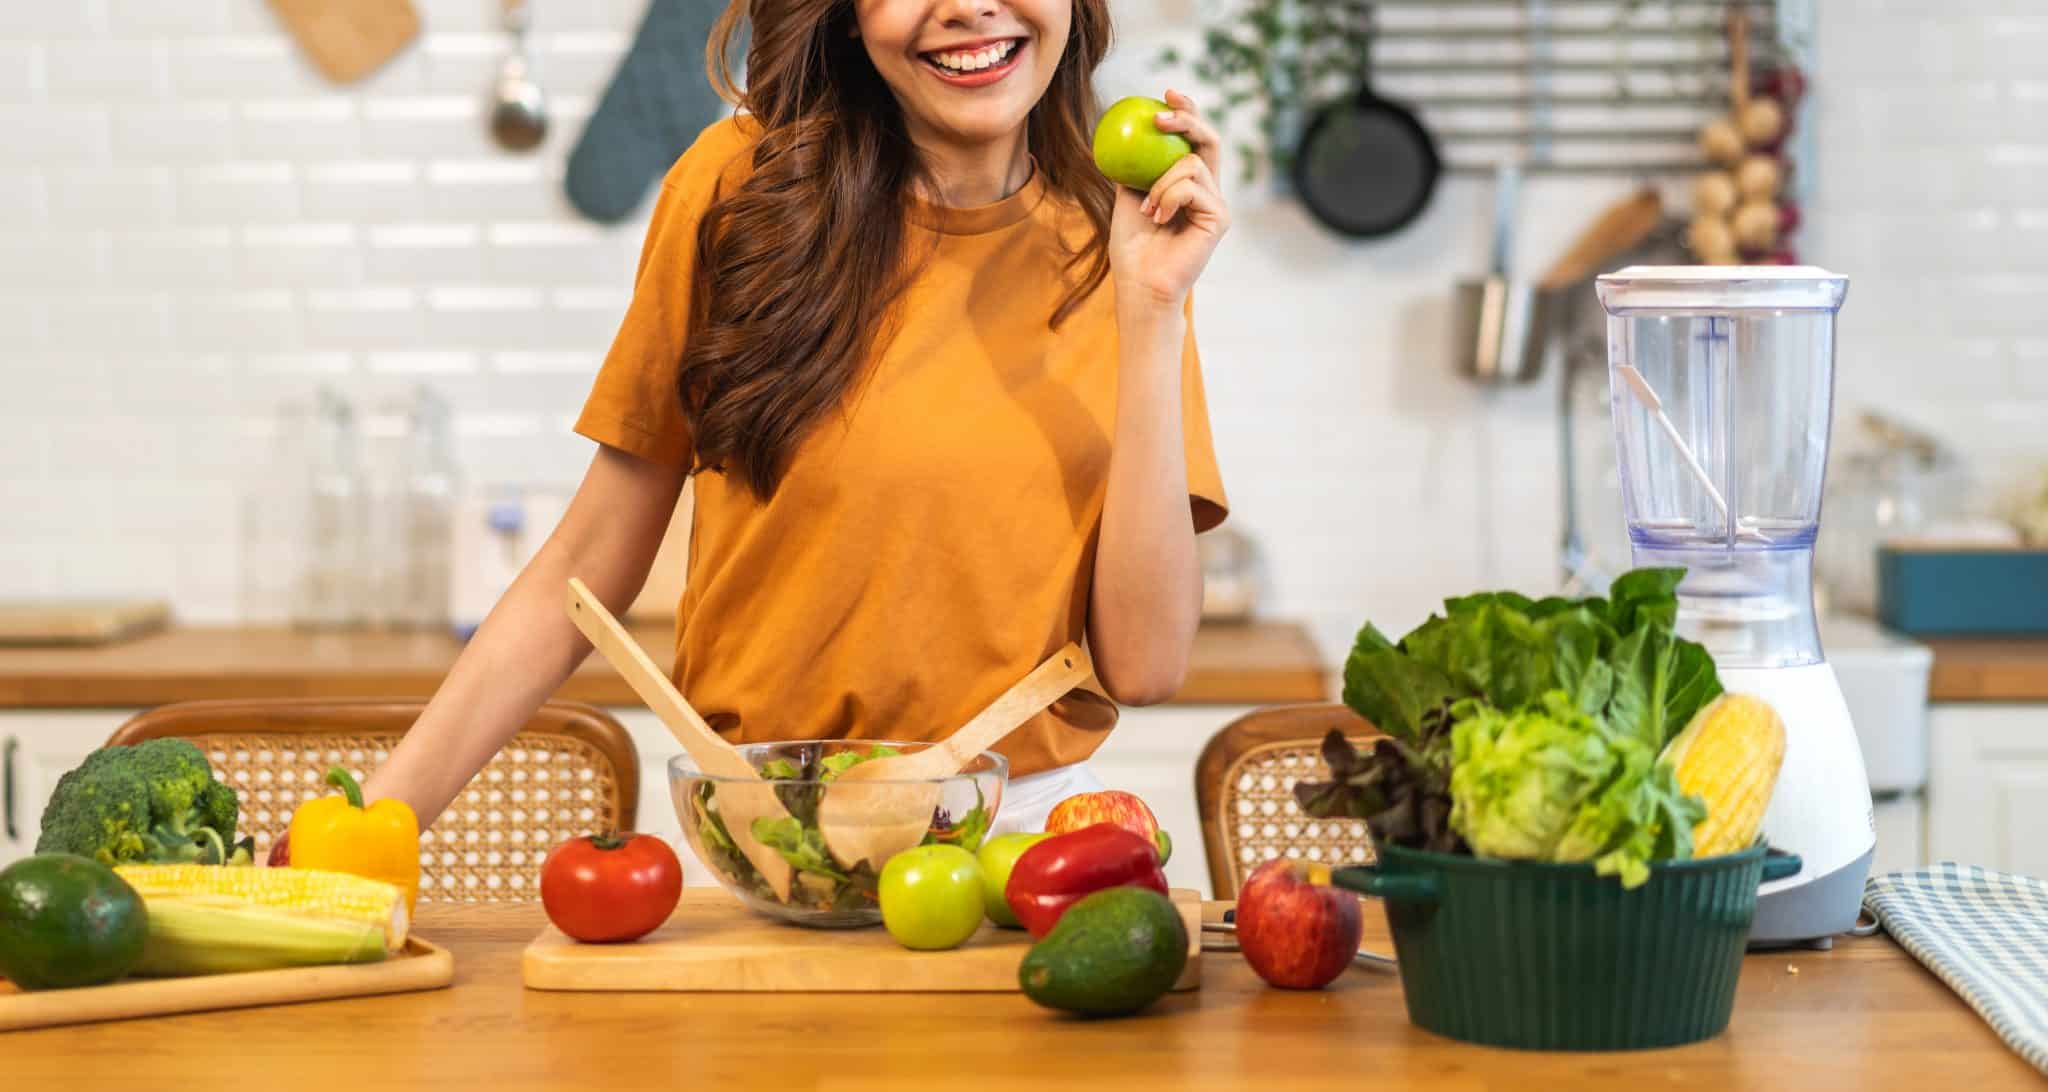 Frau in der Küche mit Gemüse und Salat auf der Arbeitsplatte.